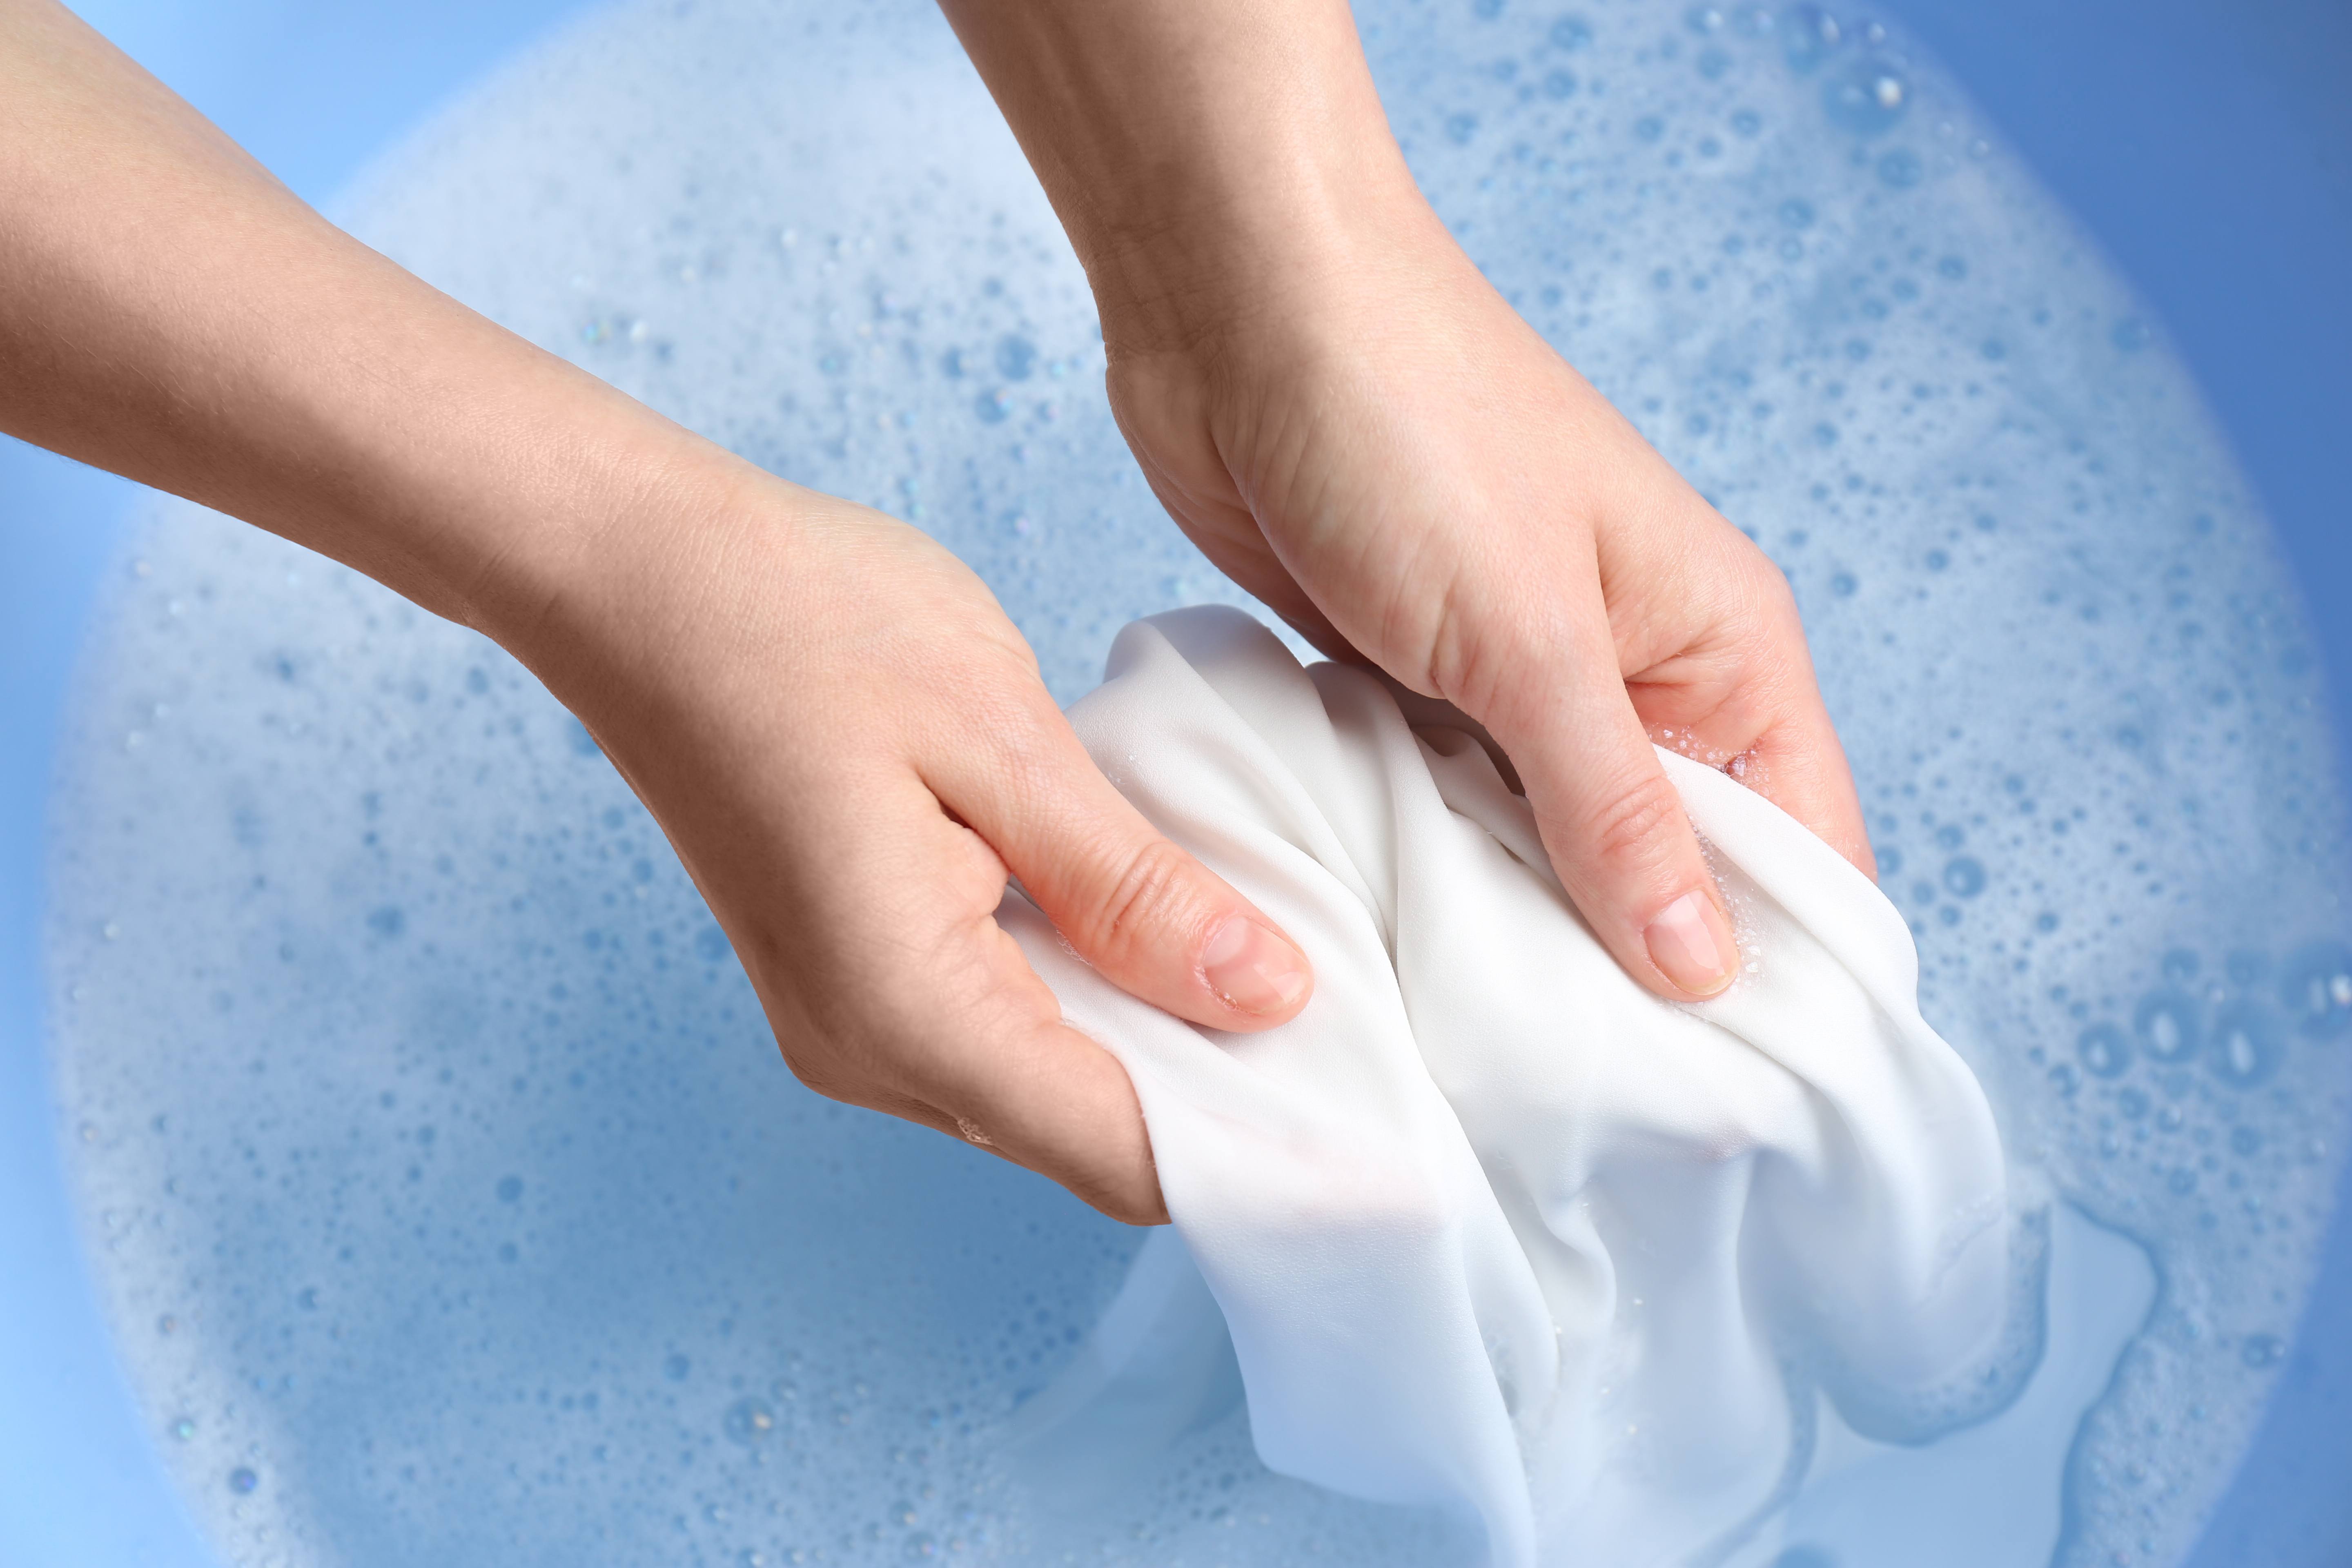 Woman handwashing a garment. | Source: Shutterstock